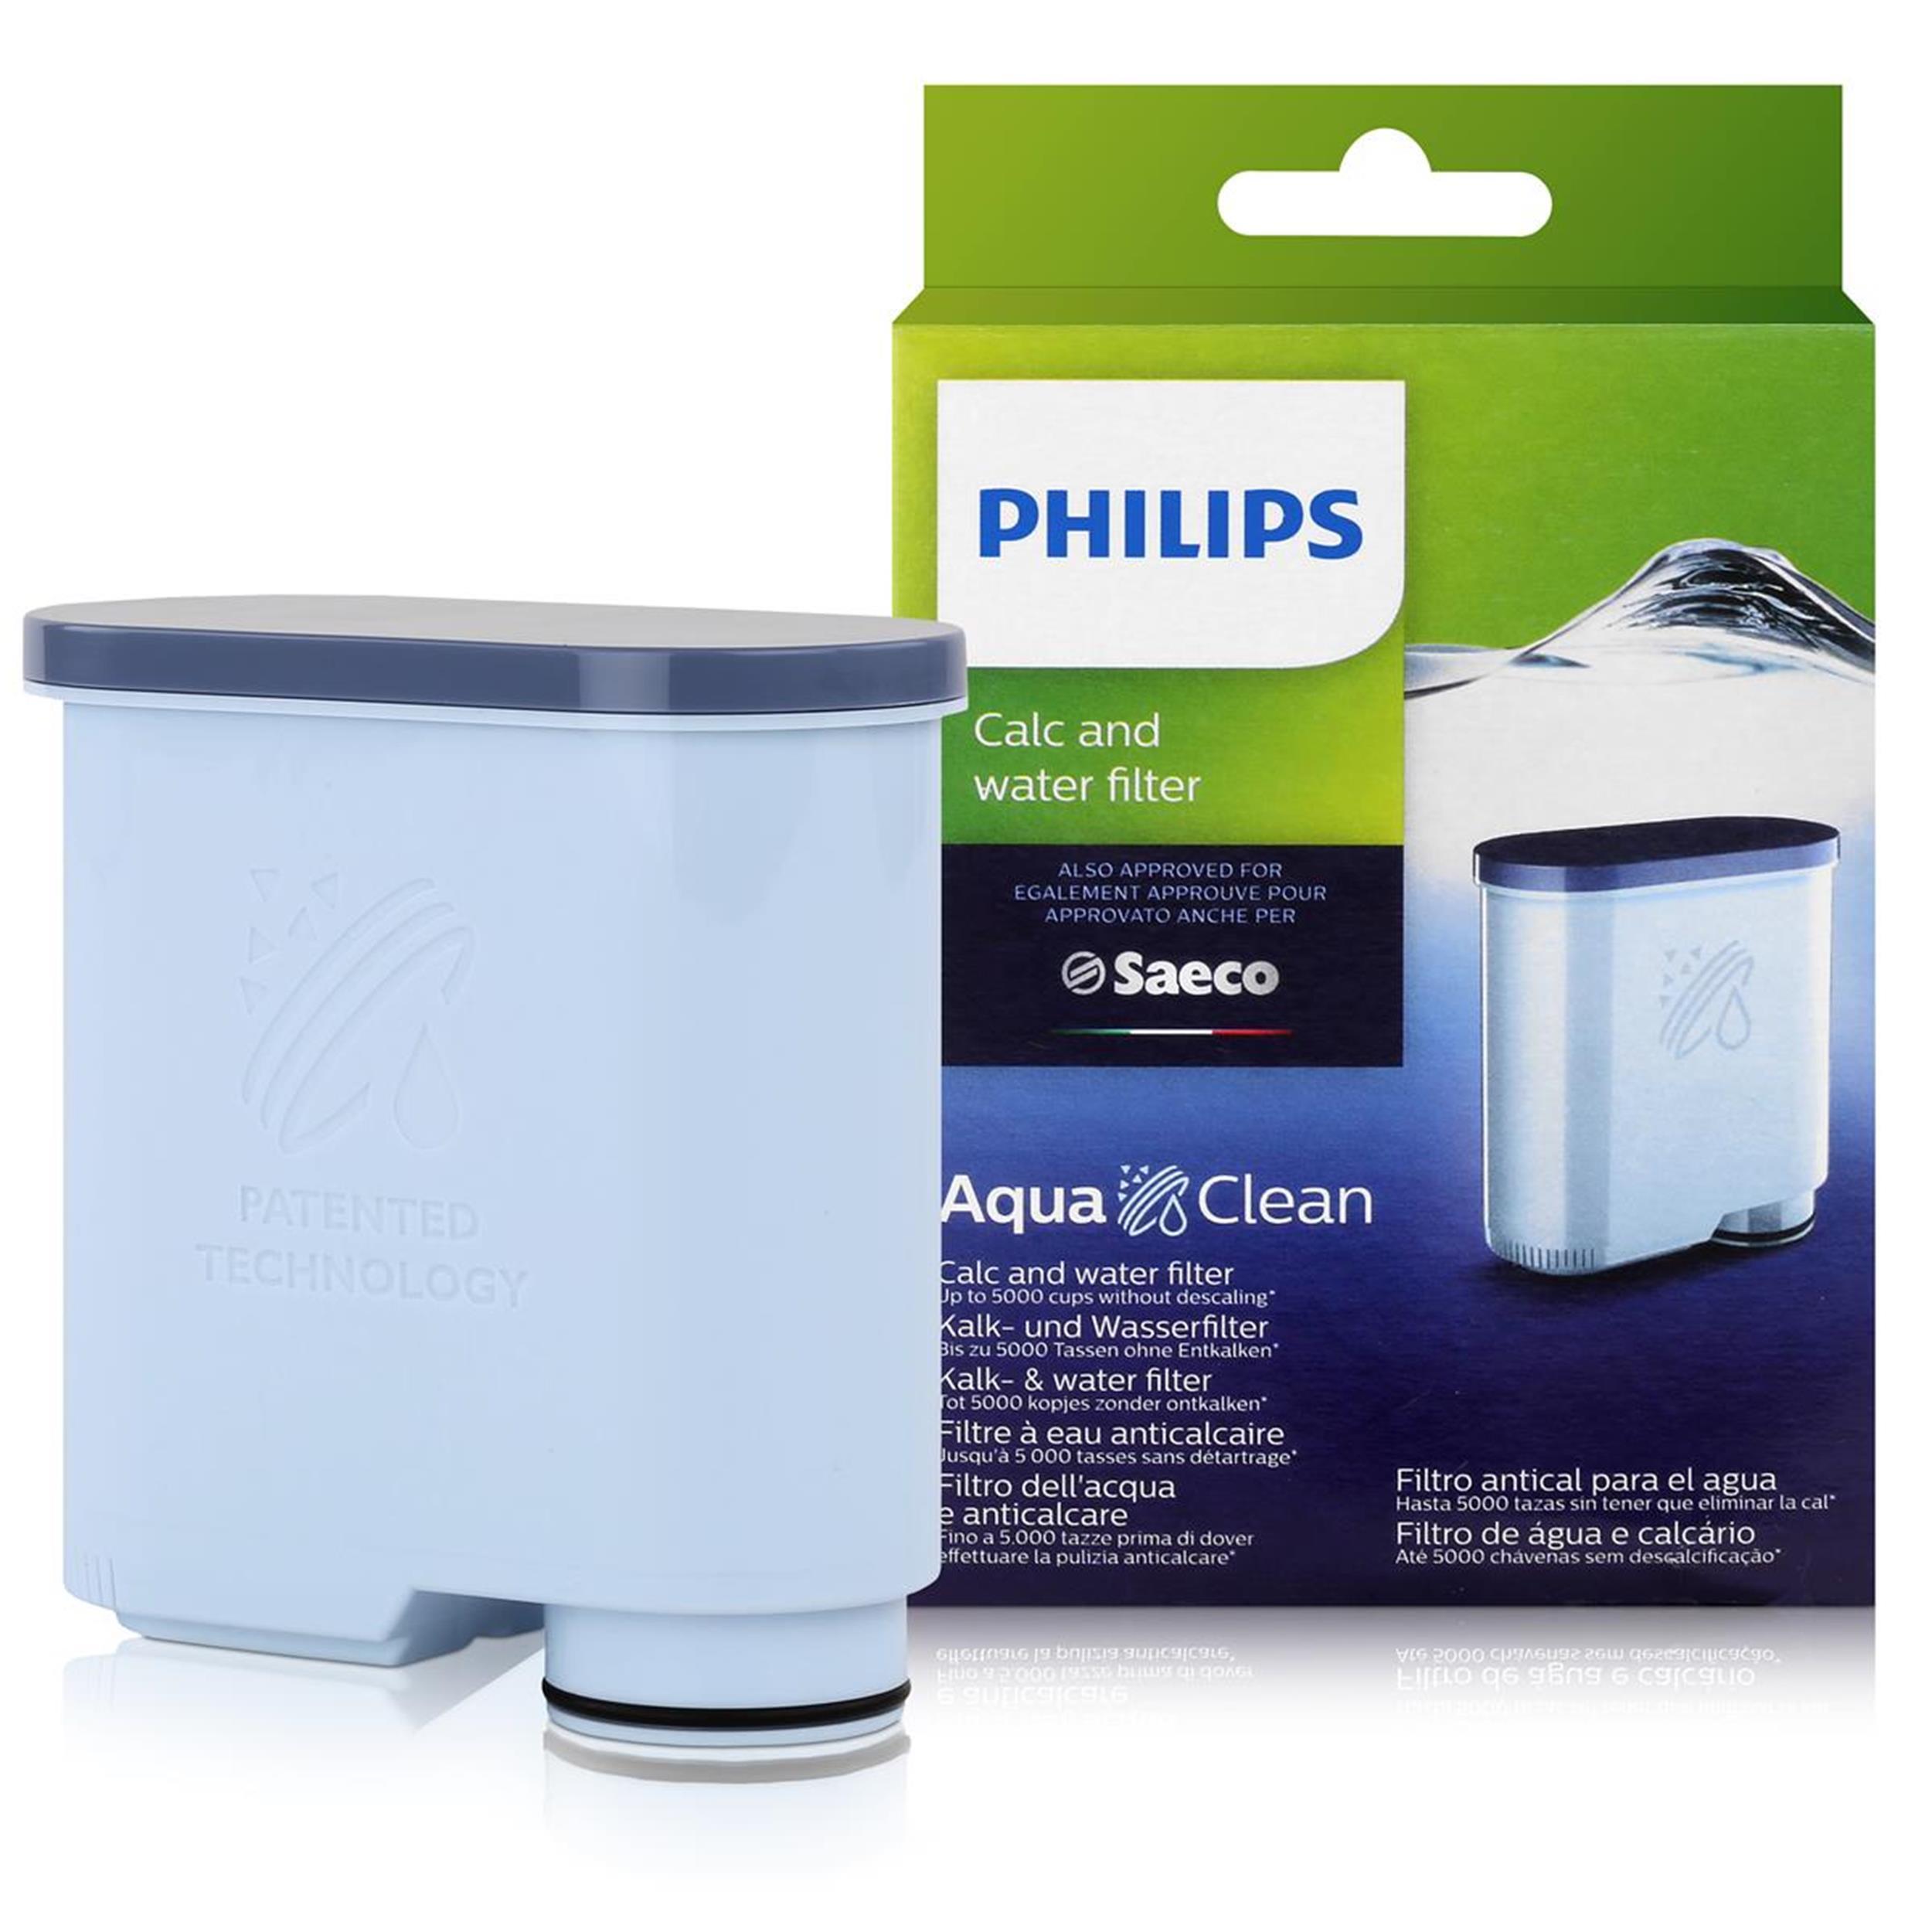  Philips AquaClean Kalk- und Wasserfilter für